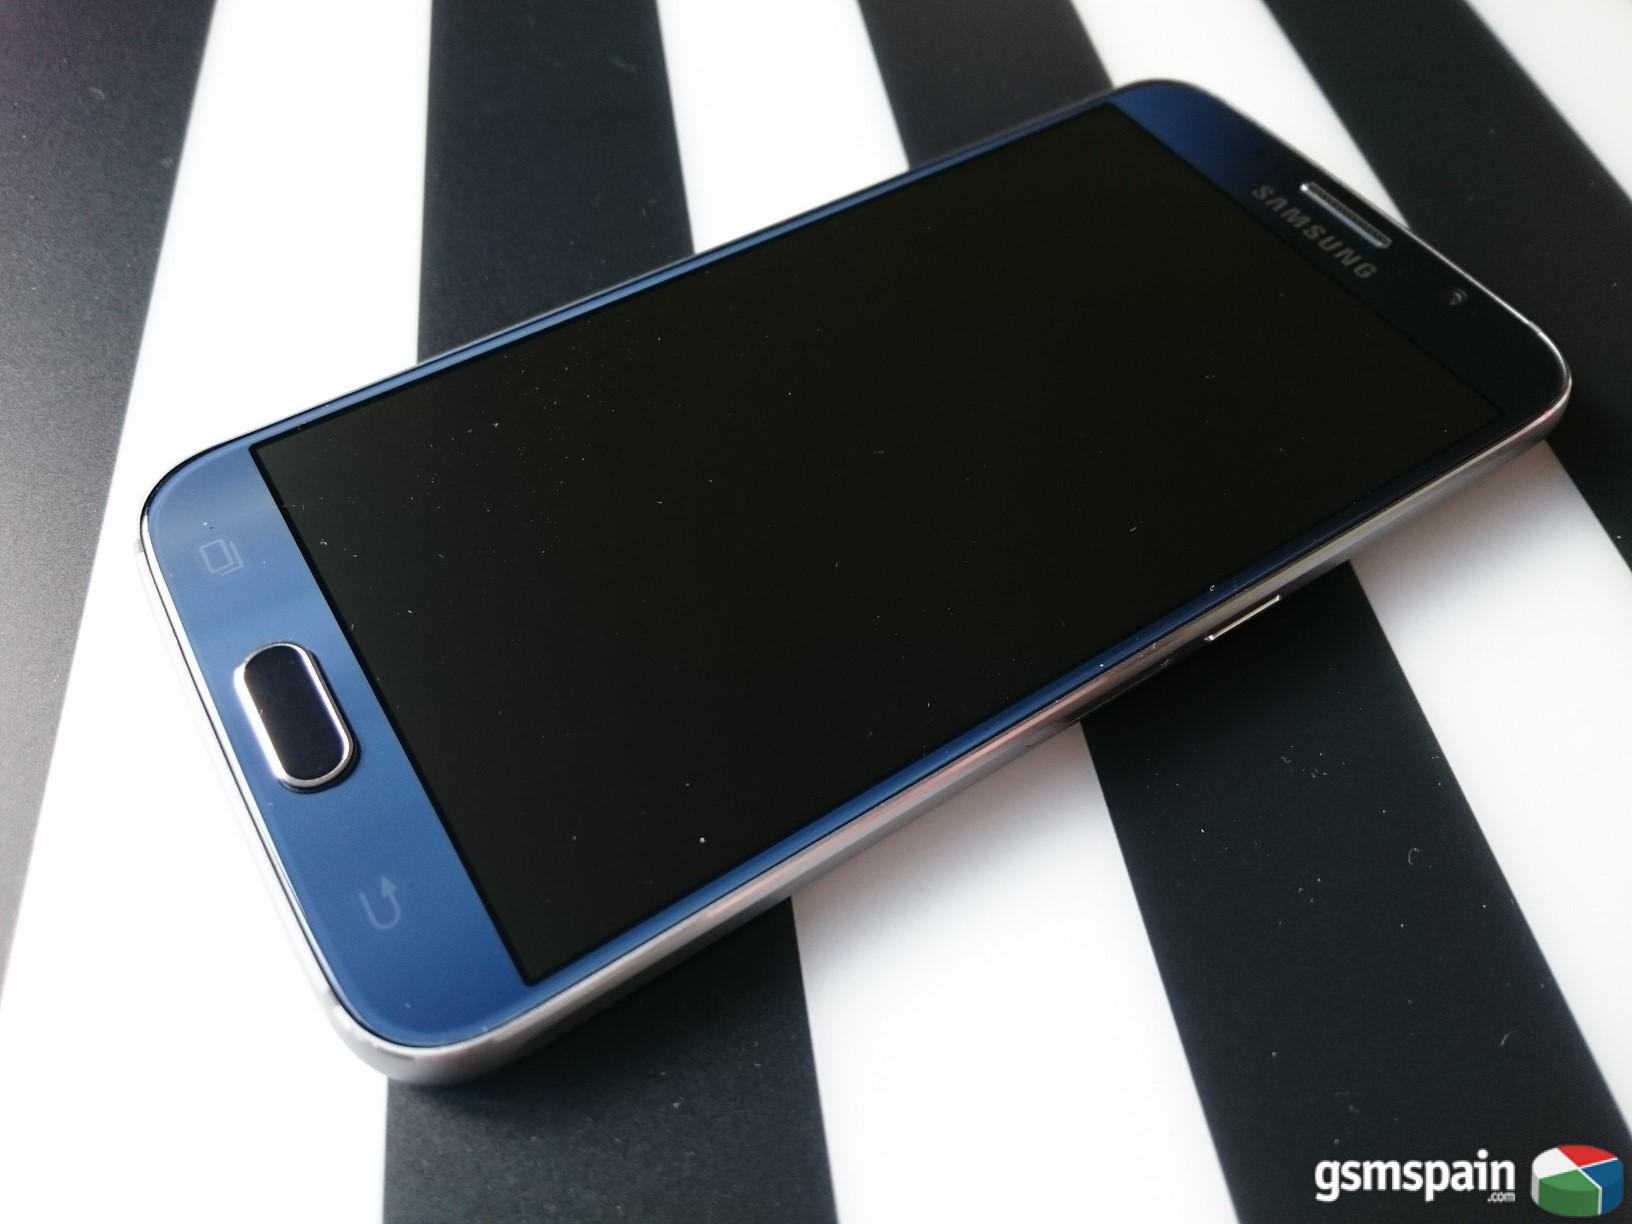 [VENDO] Samsung Galaxy S6 Black Saphire 32GB nuevo